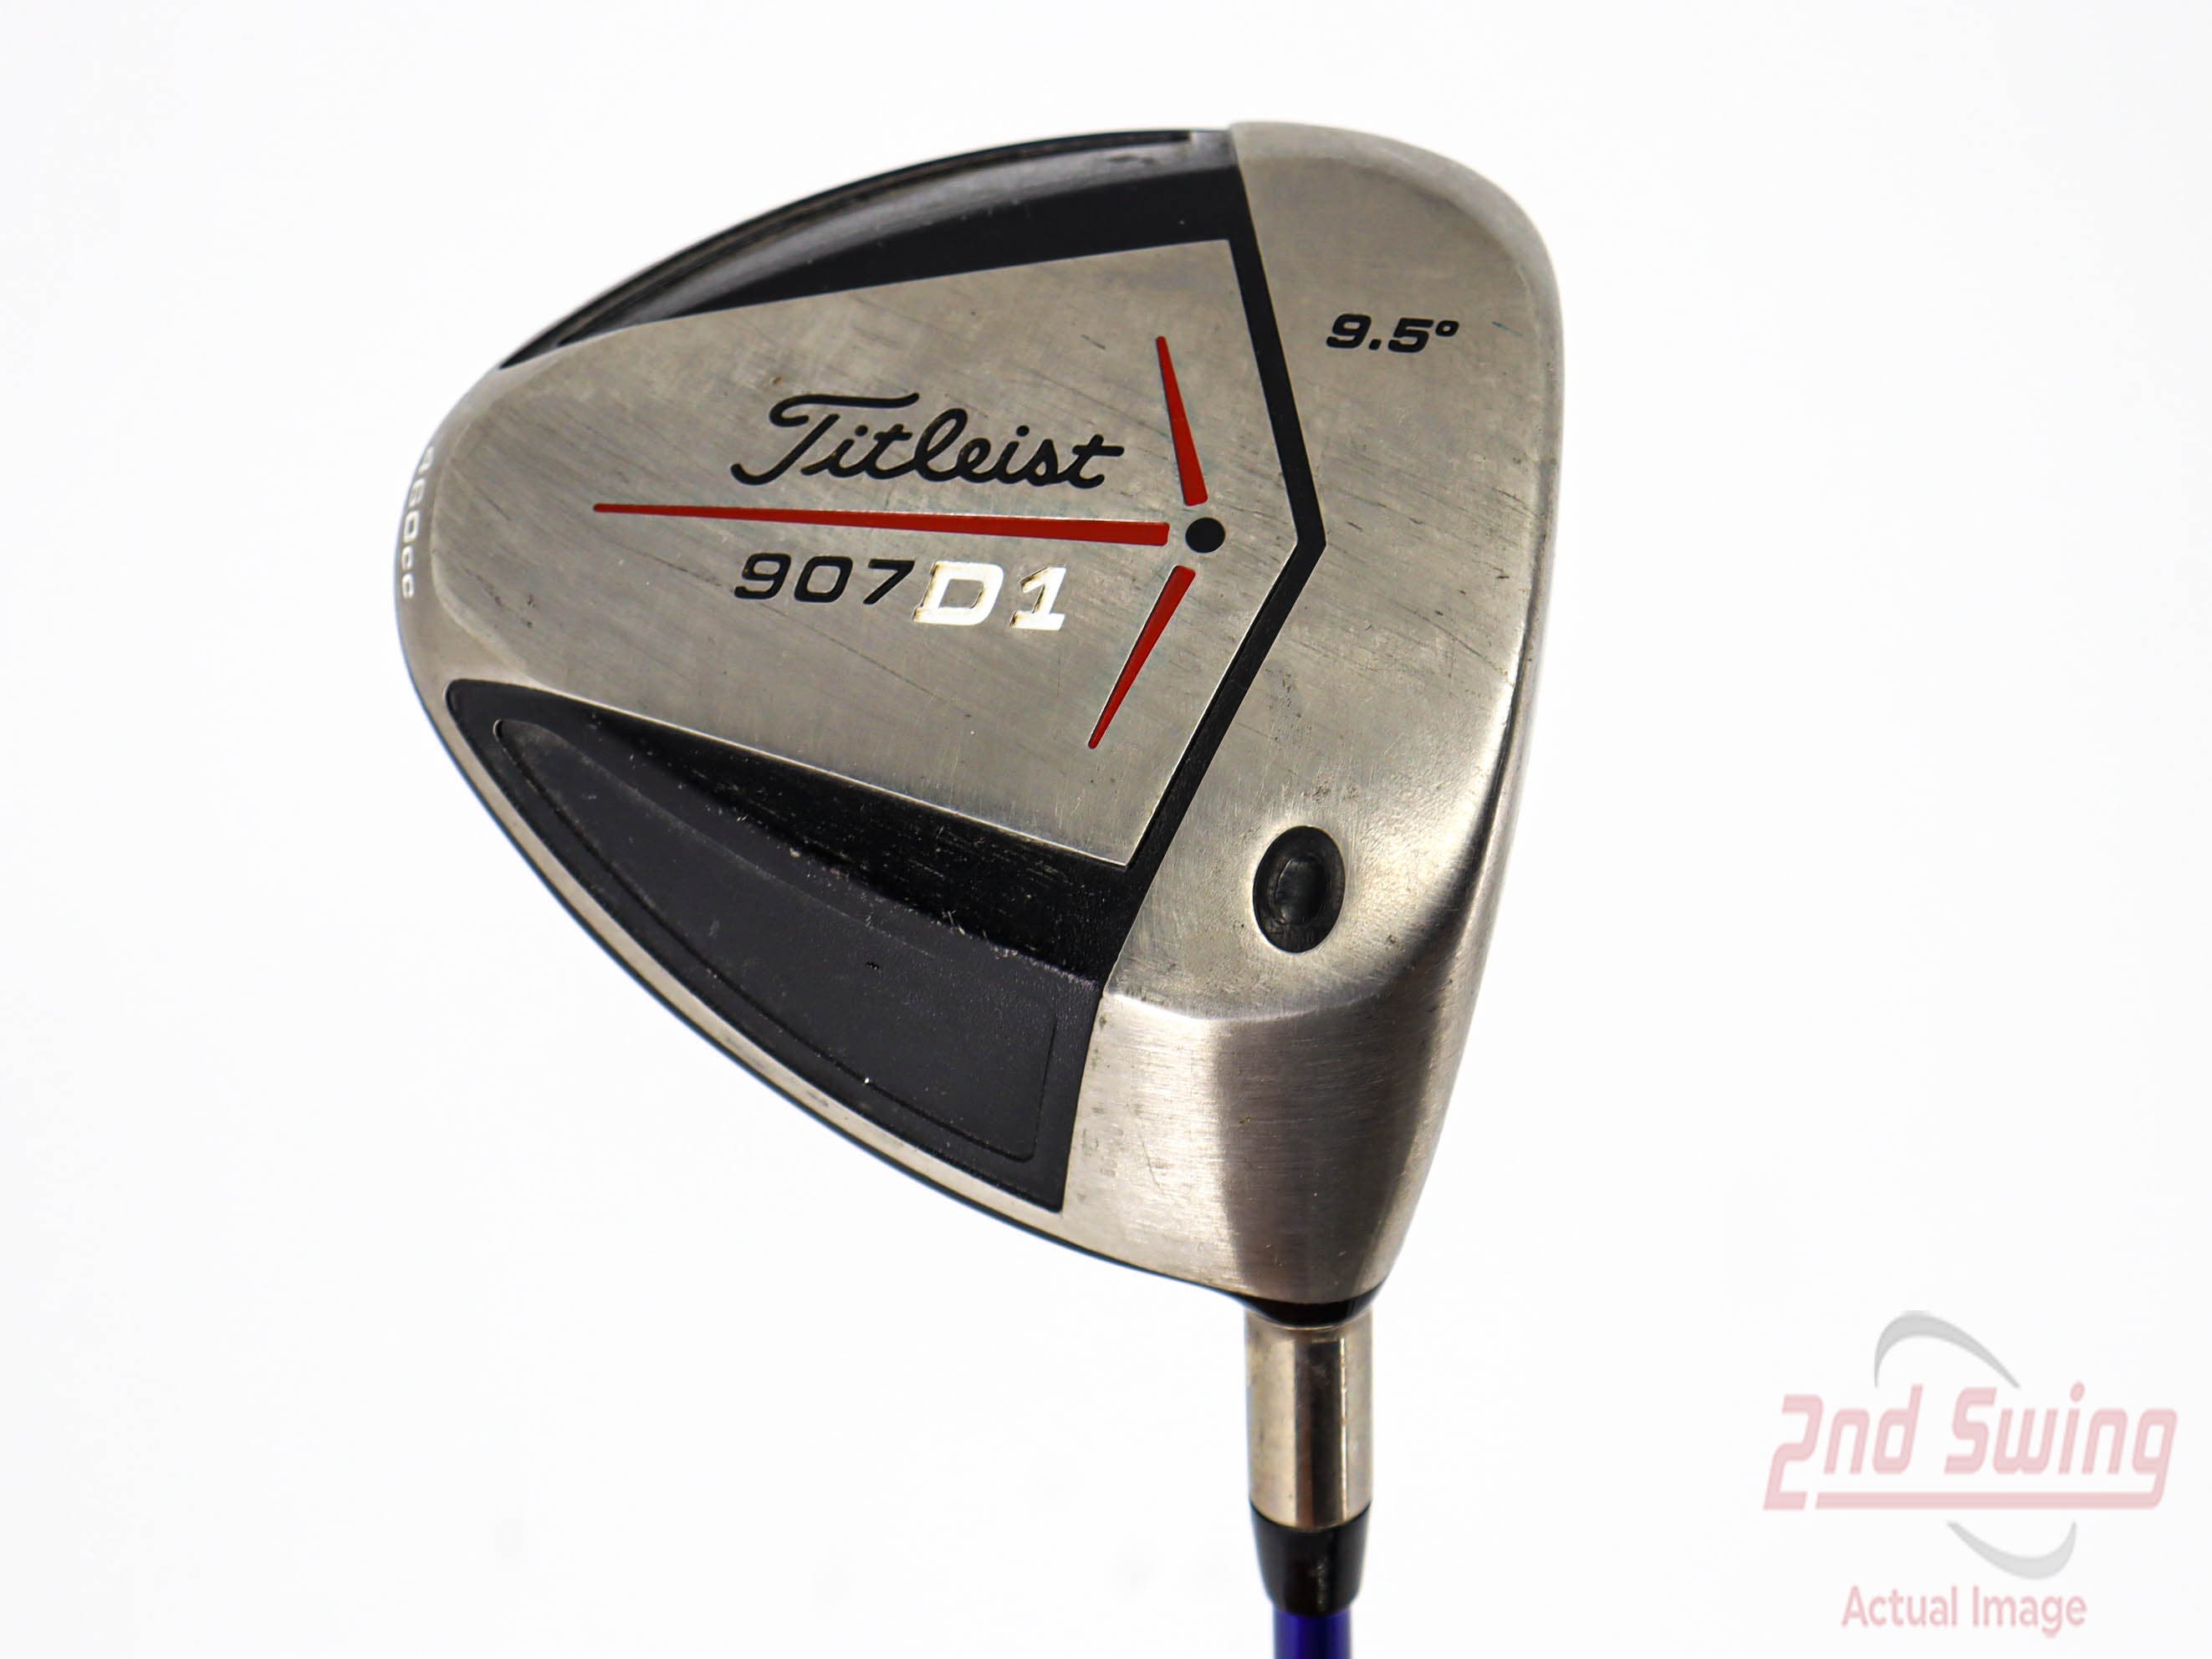 Titleist 907 D1 Driver | 2nd Swing Golf